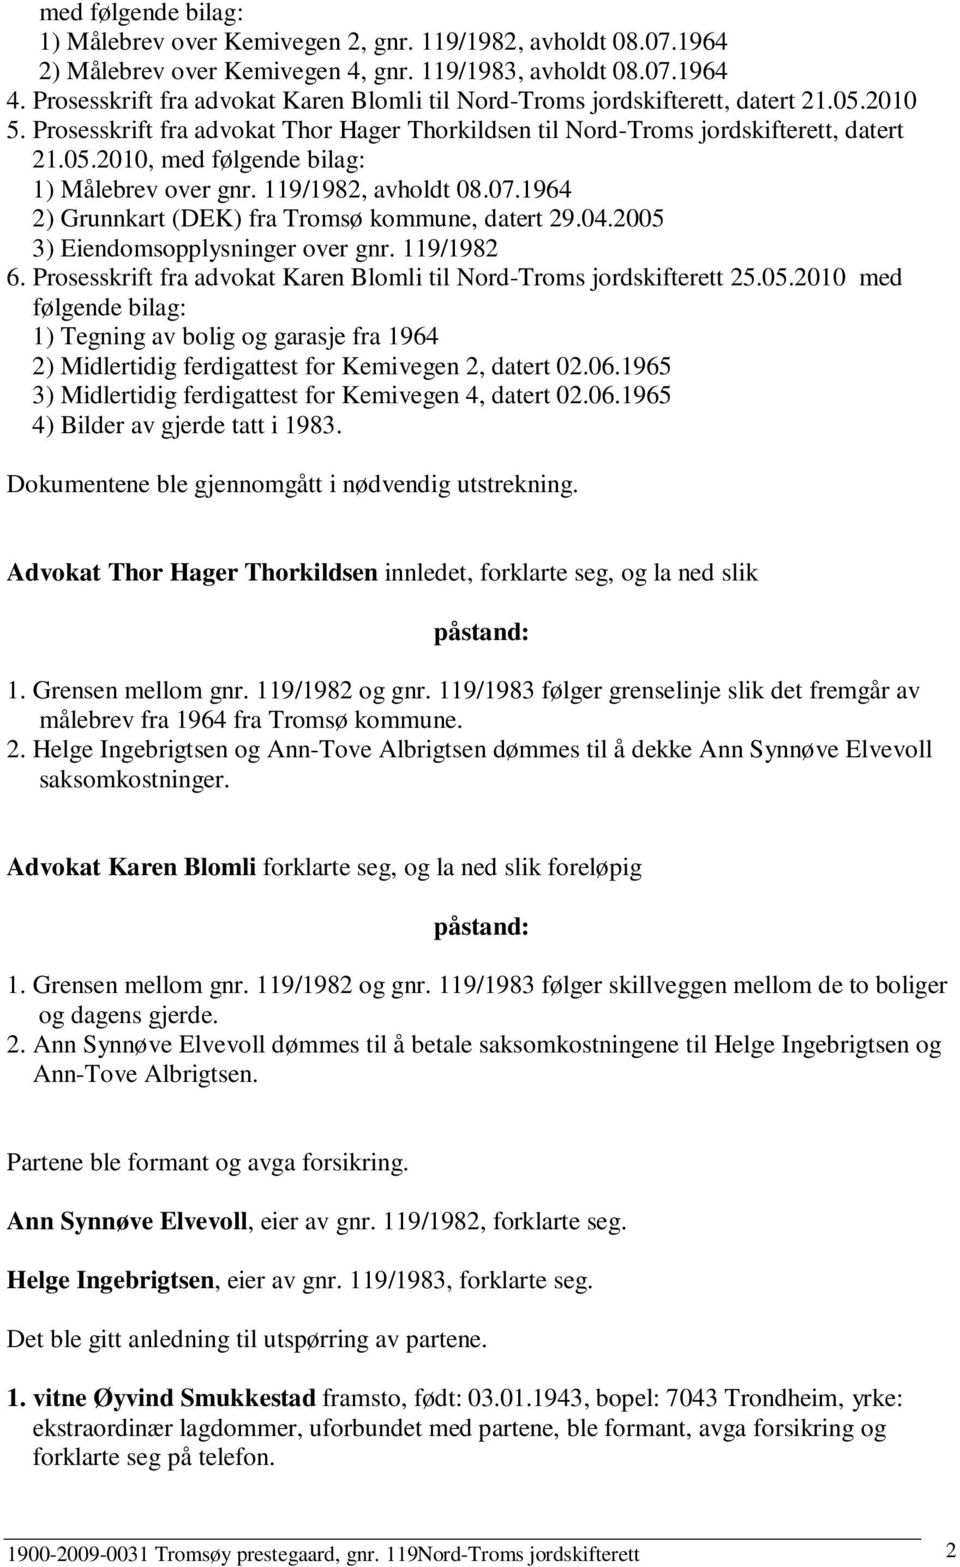 119/1982, avholdt 08.07.1964 2) Grunnkart (DEK) fra Tromsø kommune, datert 29.04.2005 3) Eiendomsopplysninger over gnr. 119/1982 6.